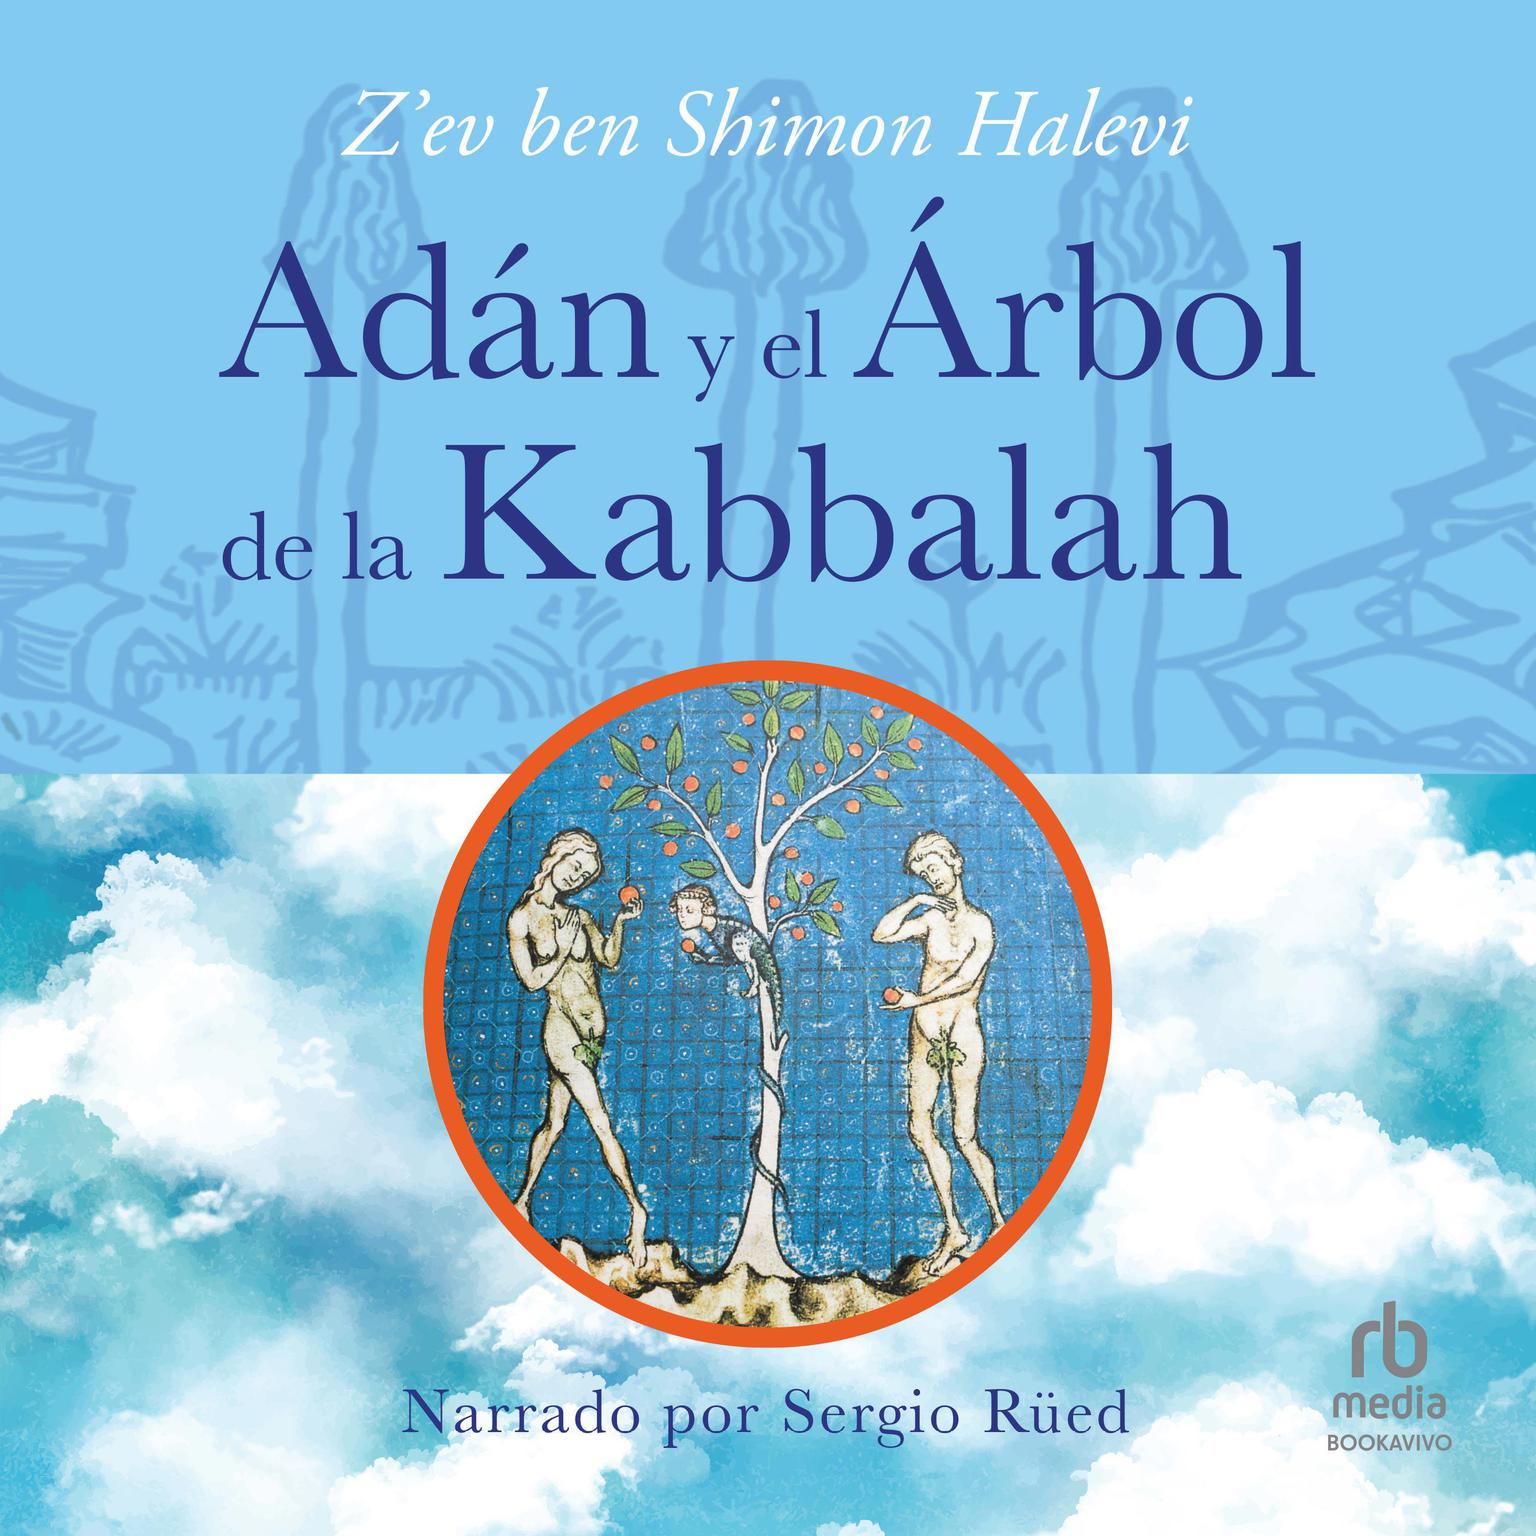 Adán y el árbol de la Kabbalah Audiobook, by Z'ev Ben Shimon Halevi